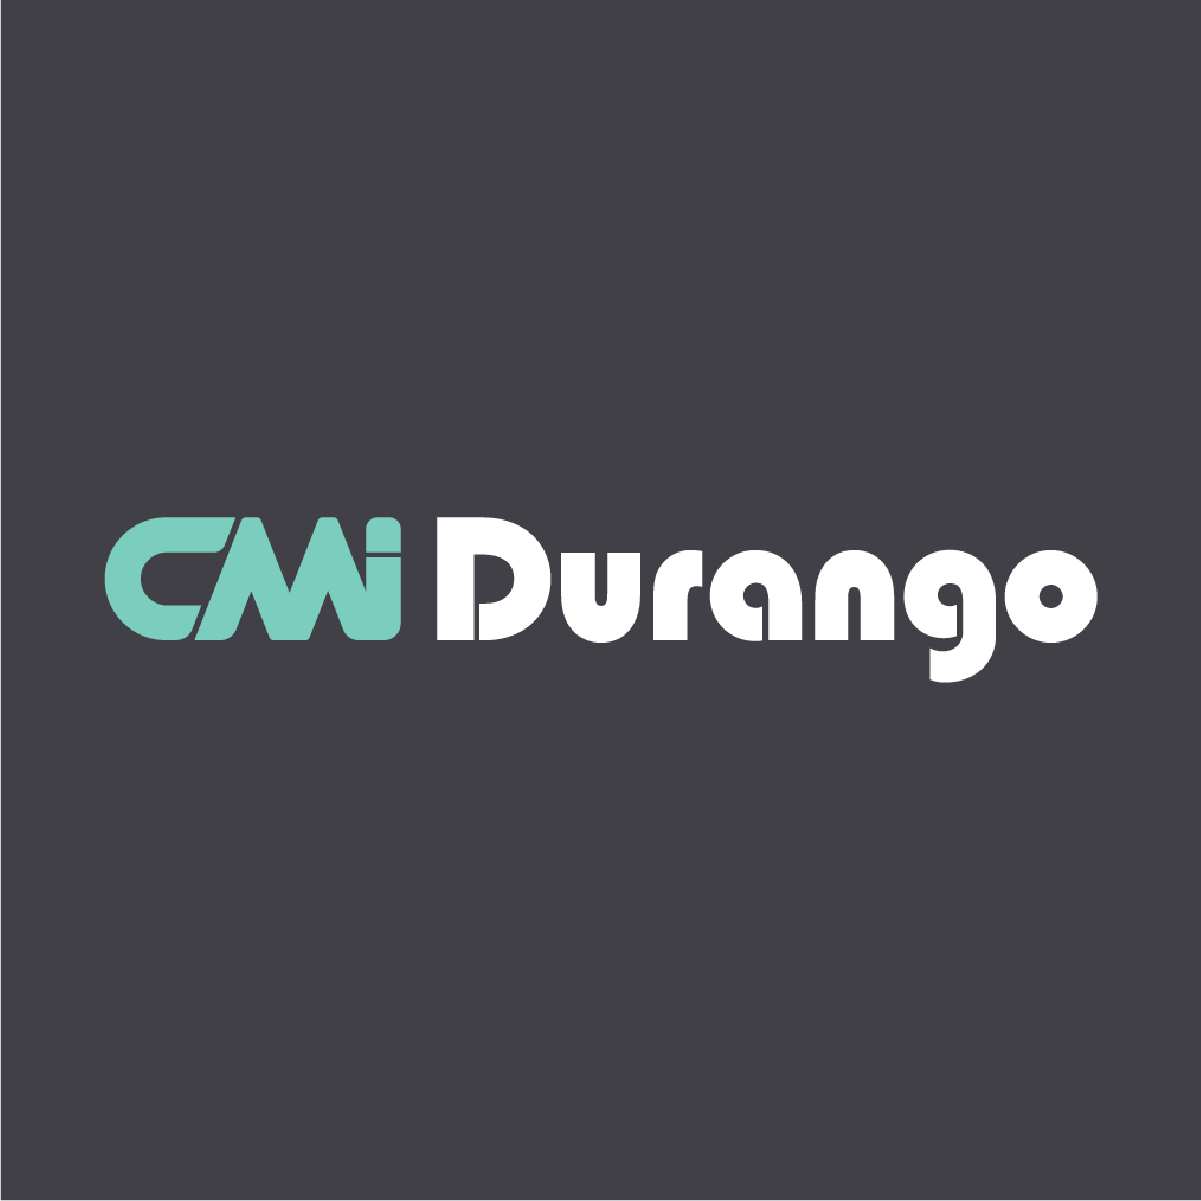 (c) Cmidurango.com